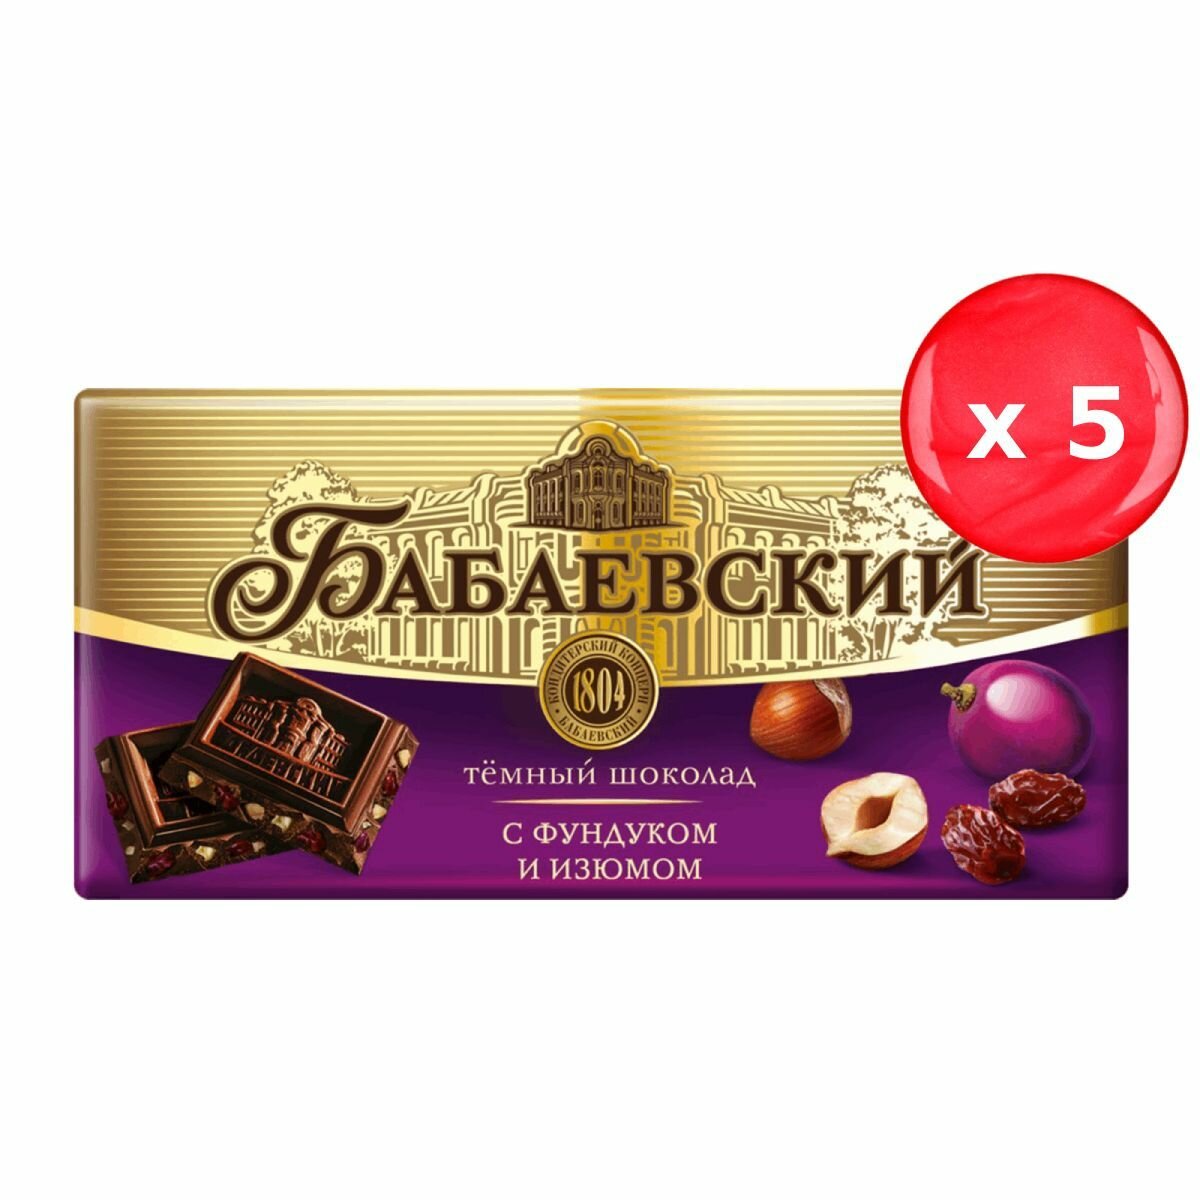 Шоколад Бабаевский темный с фундуком и изюмом 100г, набор из 5 шт.